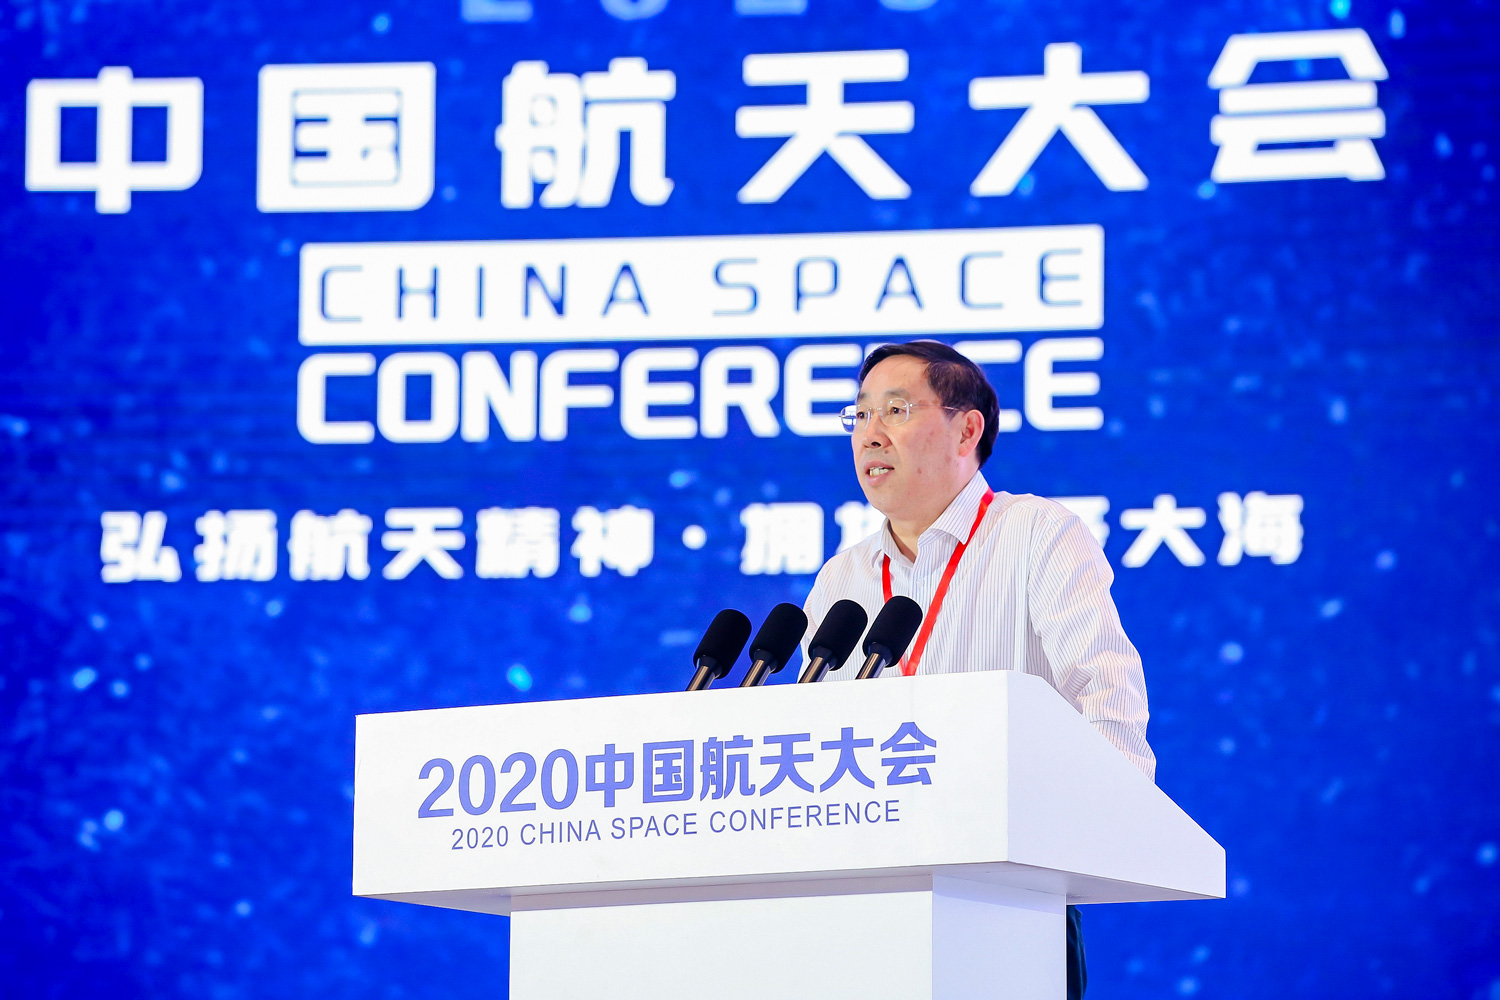 太极计划亮相中国航天大会 相关报道抢先看